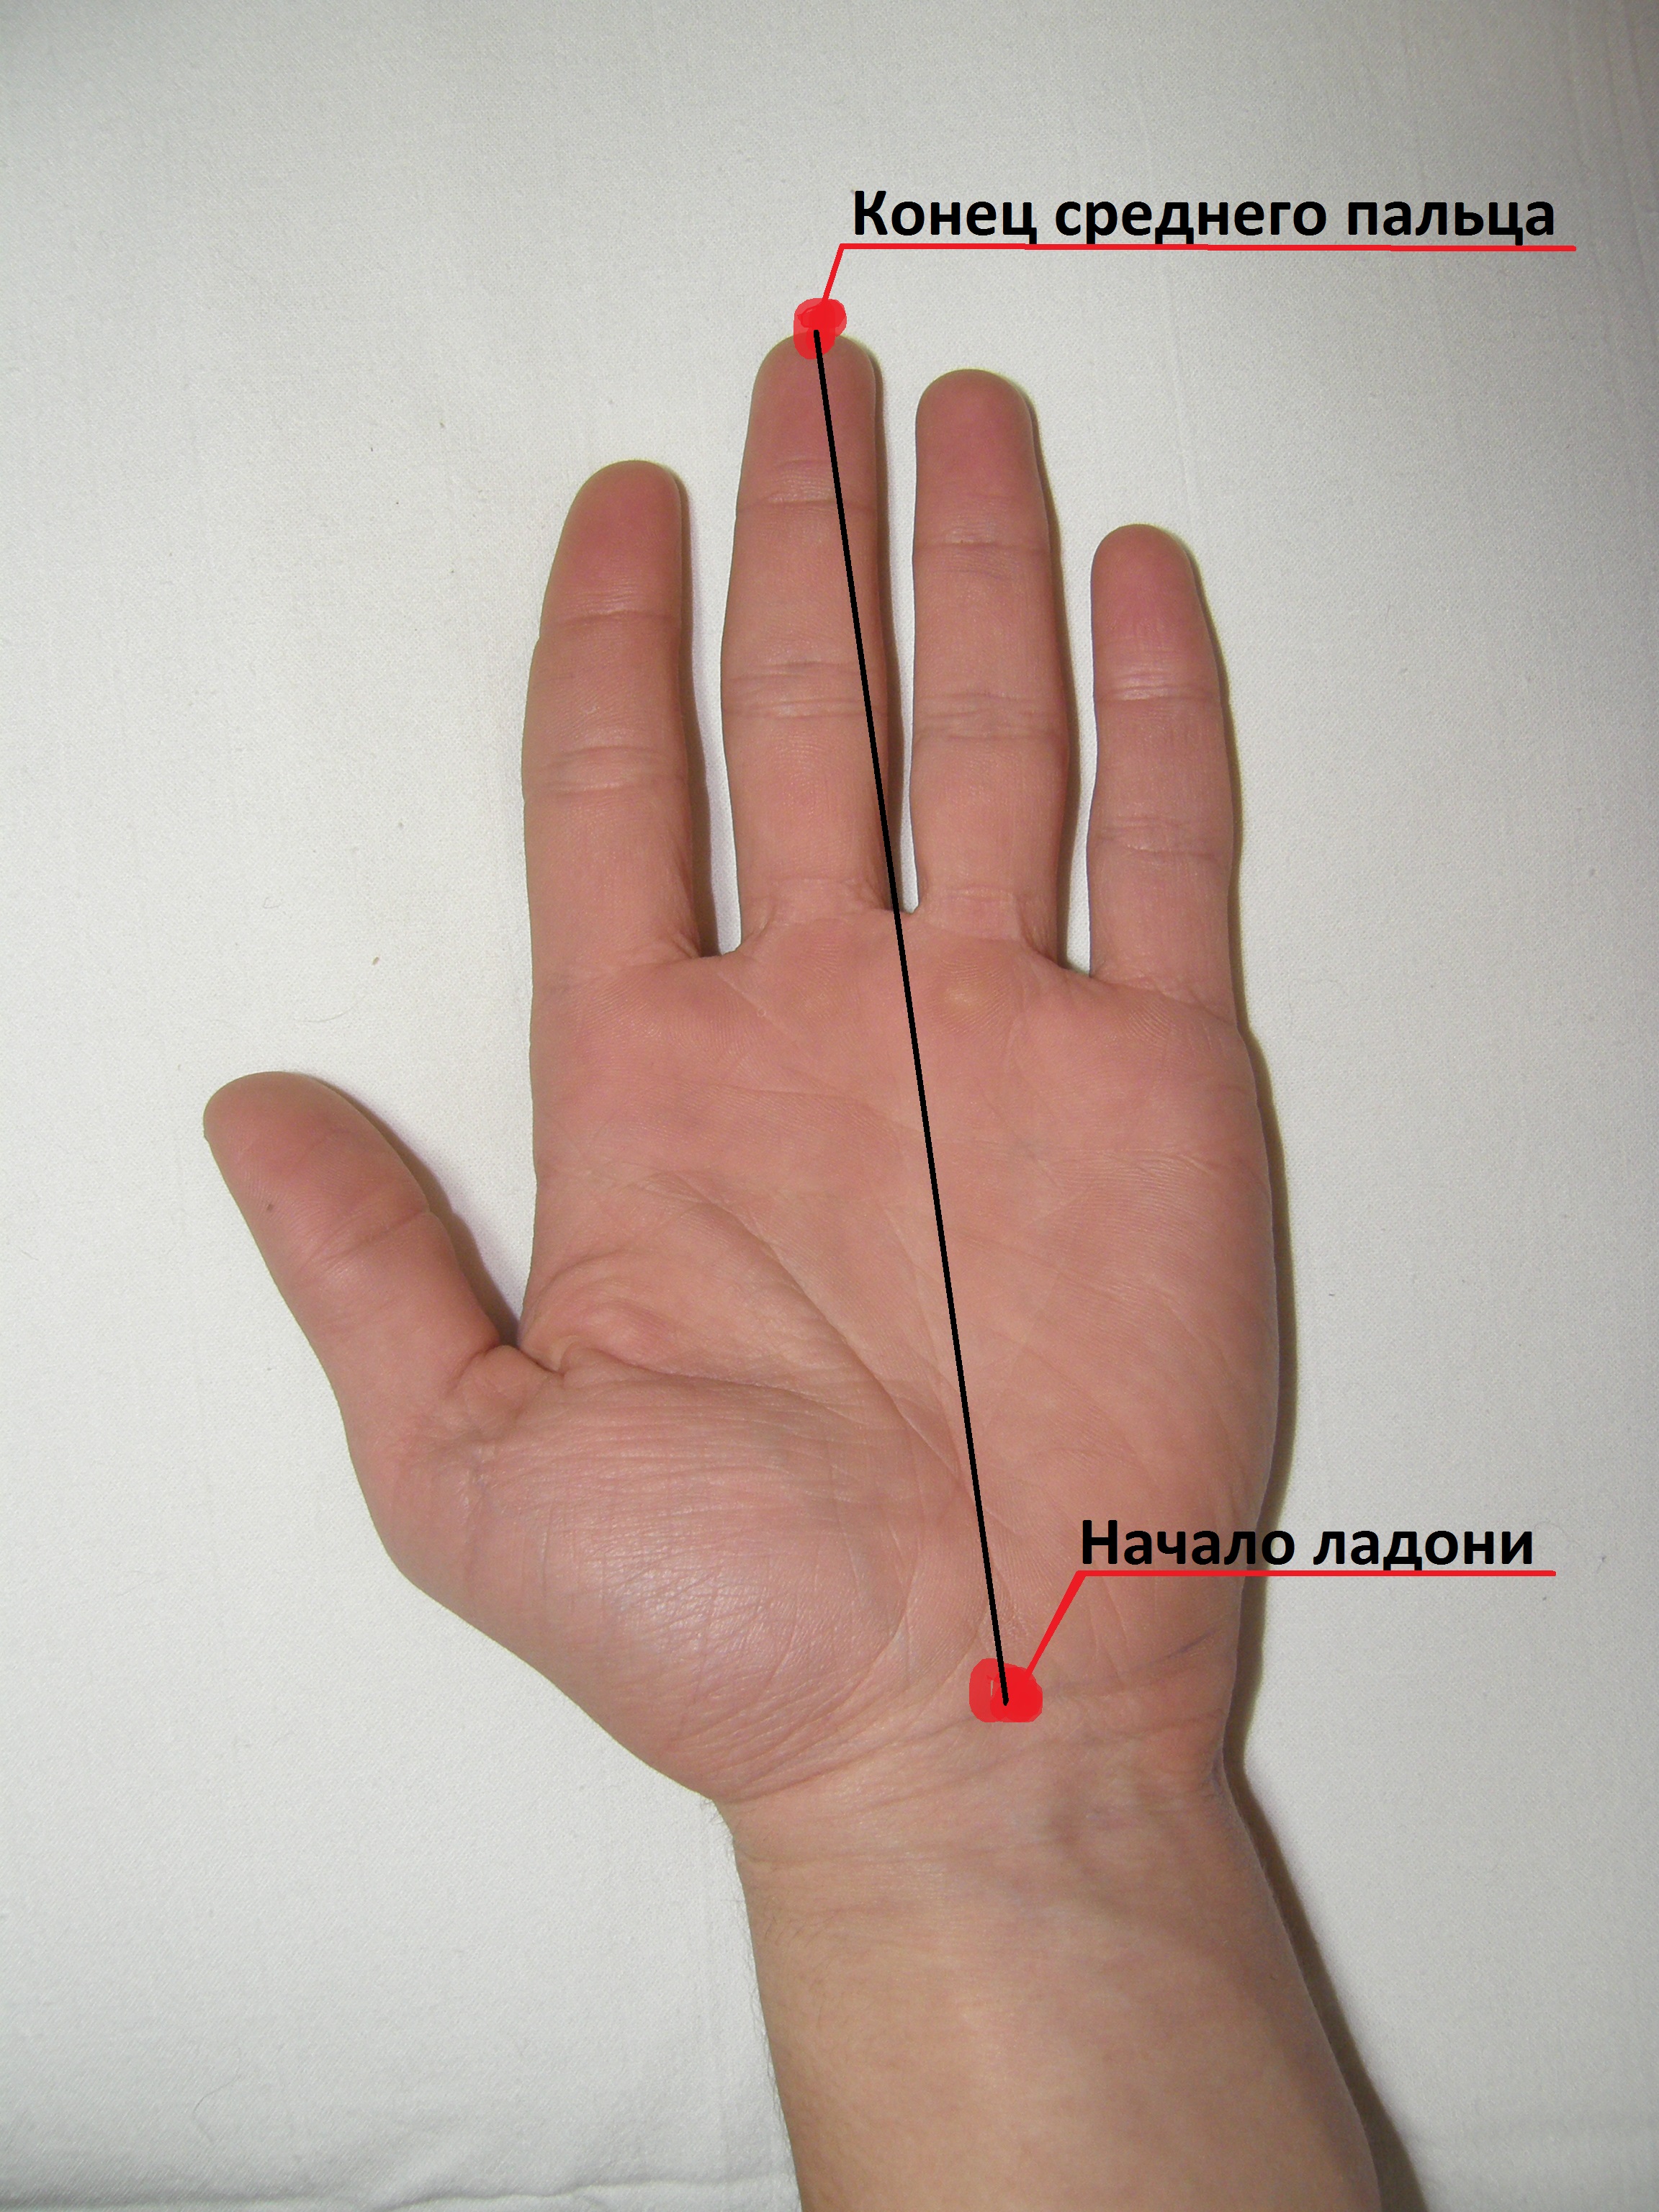 длина члена и пальцы рук в руки фото 2